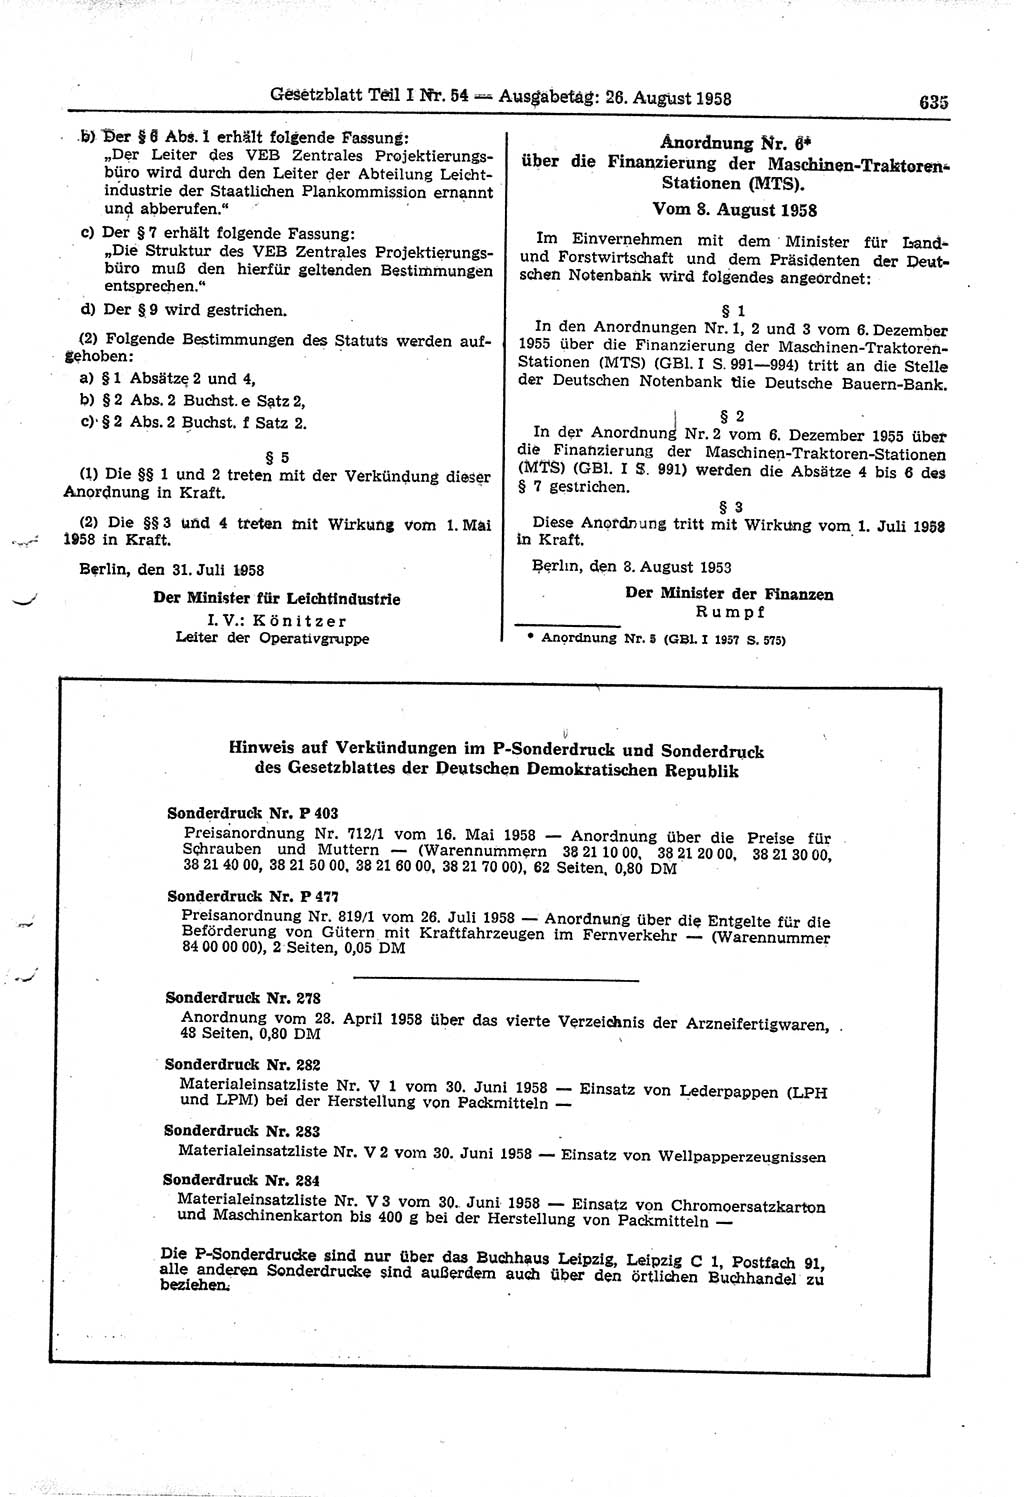 Gesetzblatt (GBl.) der Deutschen Demokratischen Republik (DDR) Teil Ⅰ 1958, Seite 635 (GBl. DDR Ⅰ 1958, S. 635)